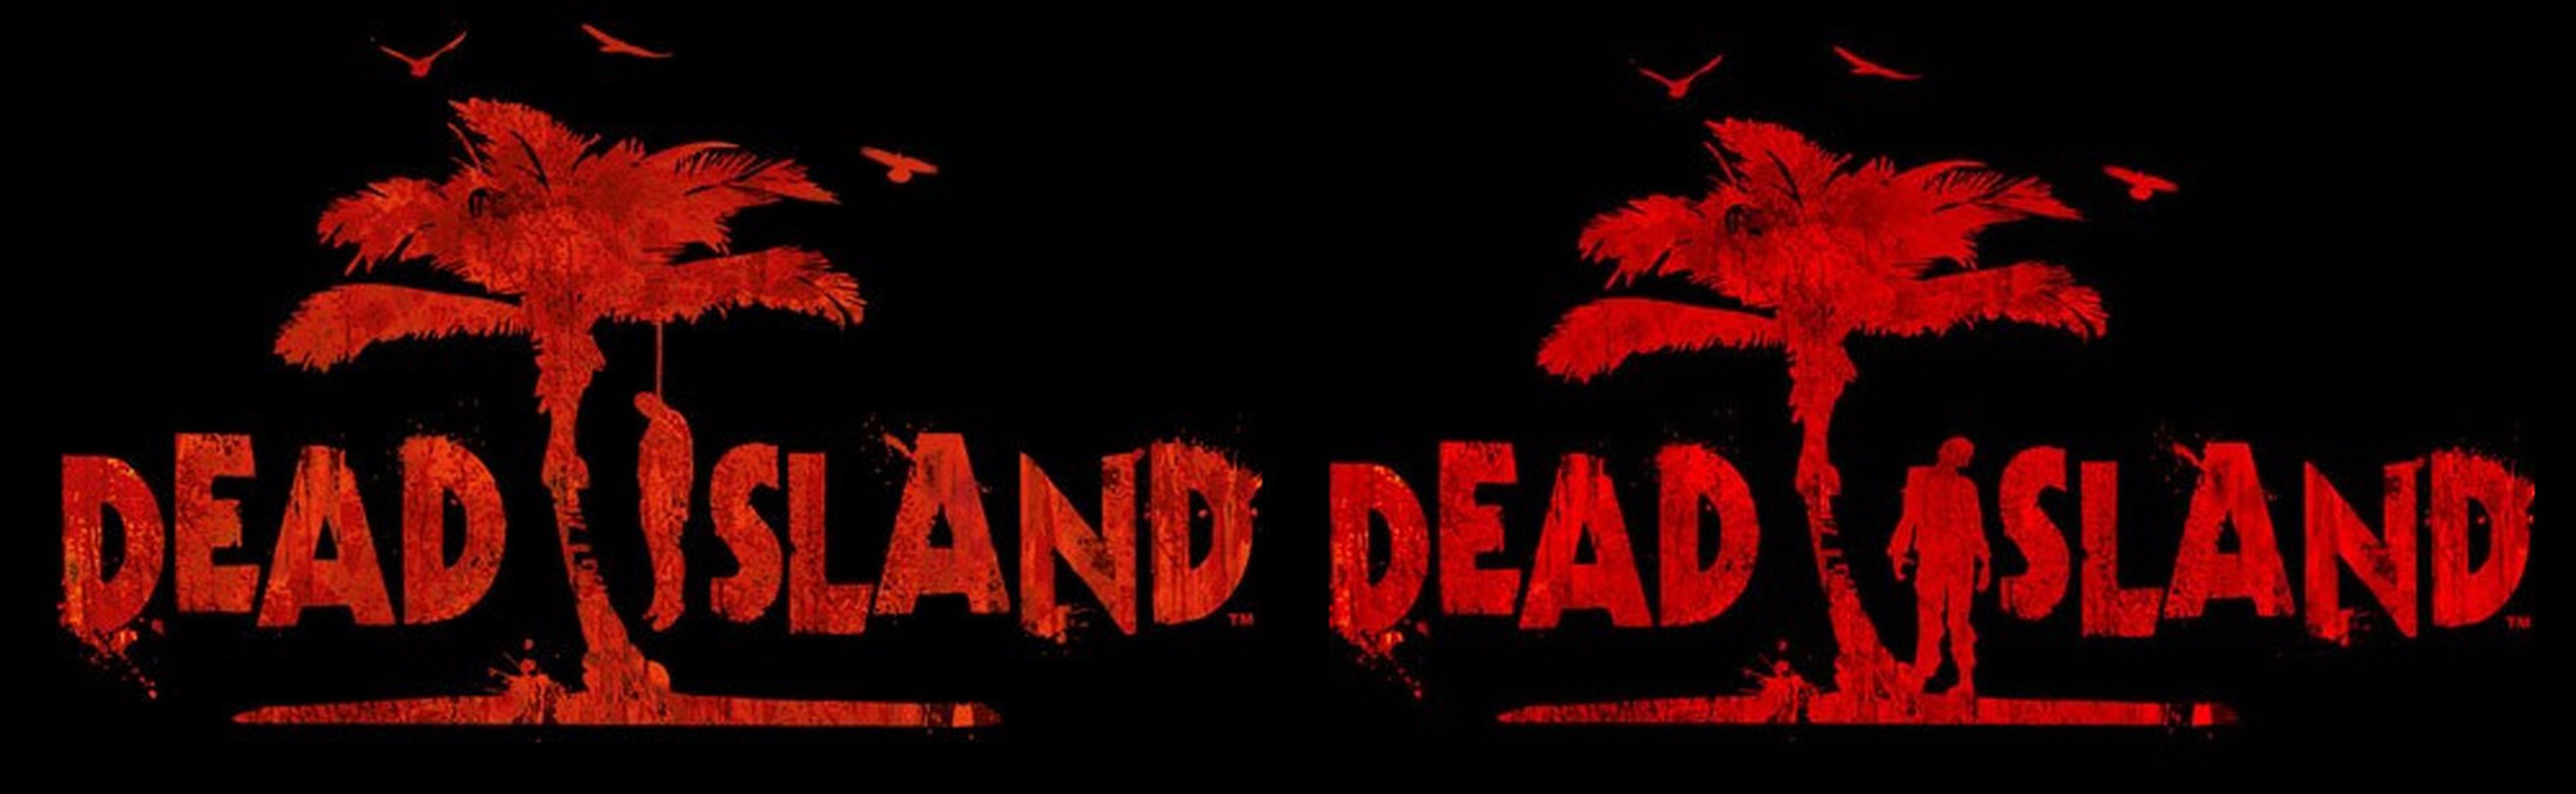 Censuran el logo de Dead Island